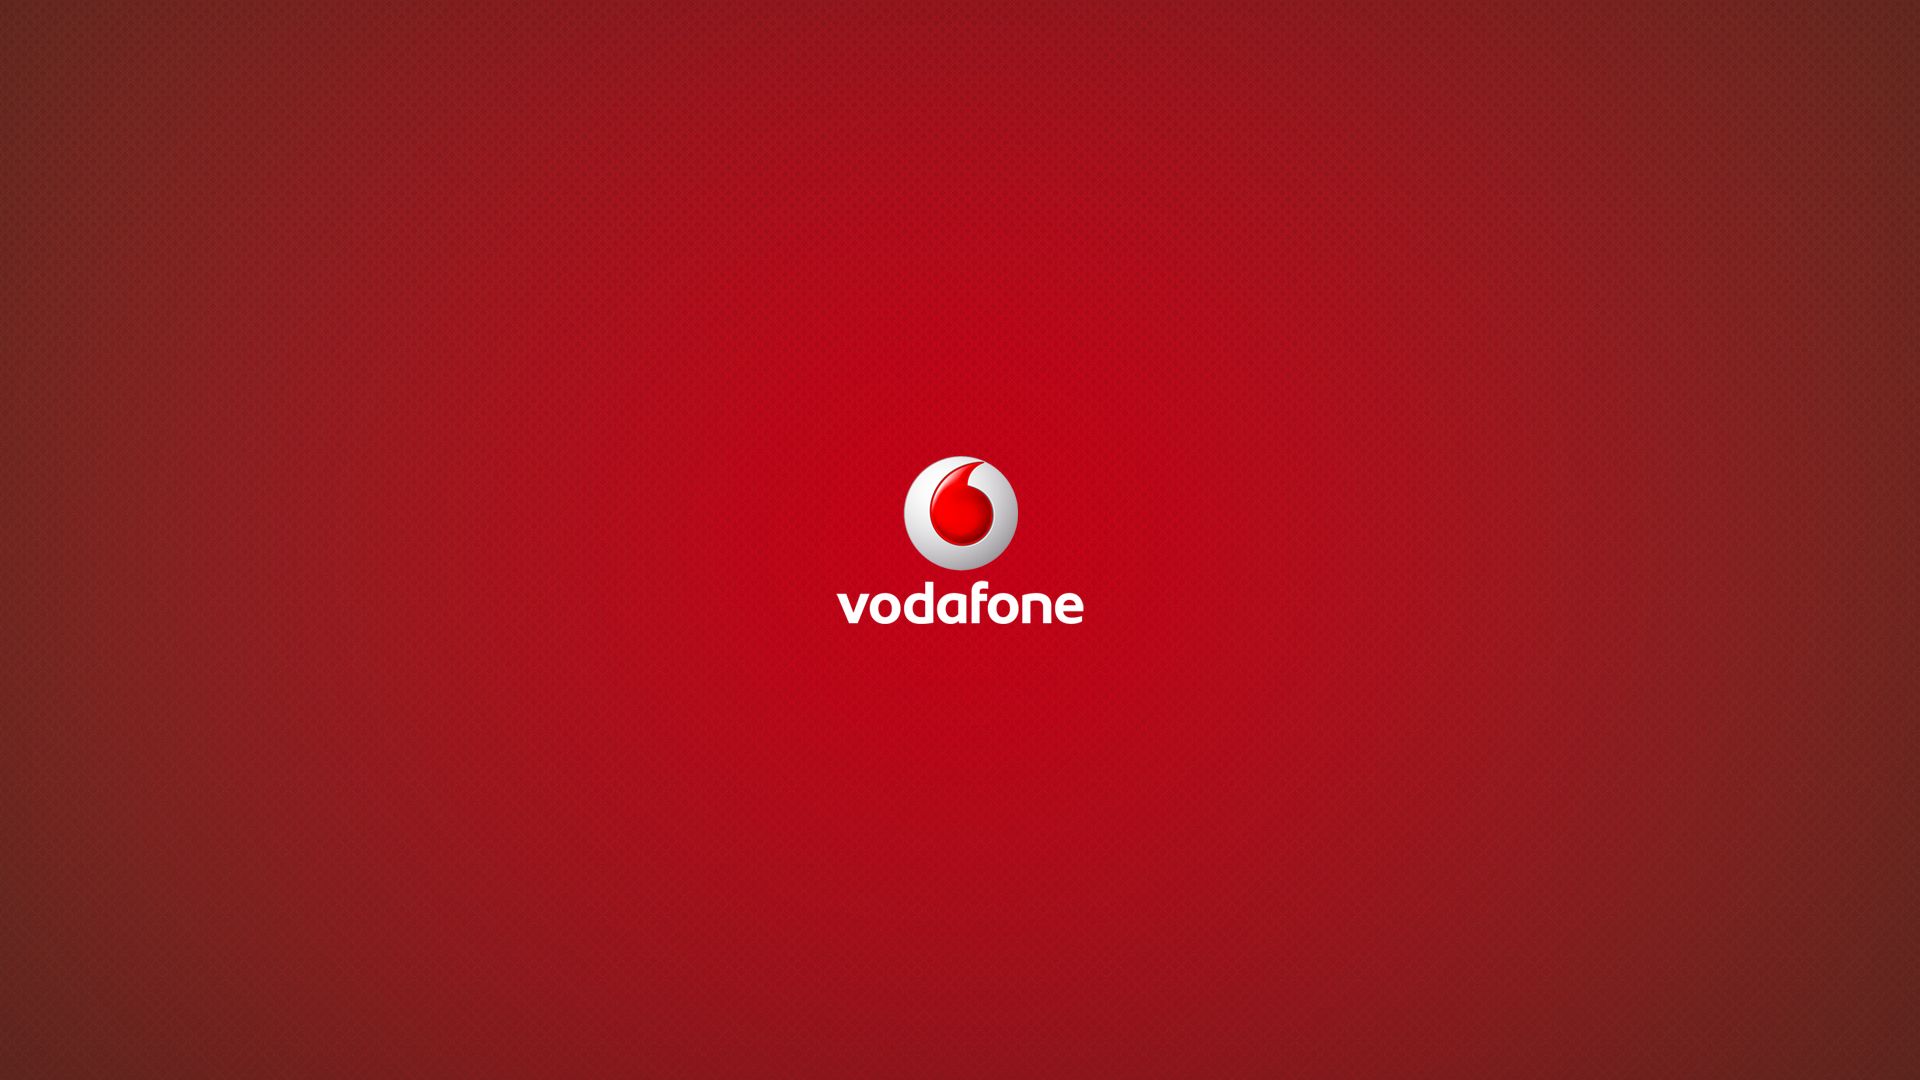 Vodafone Theme HD Wallpaper